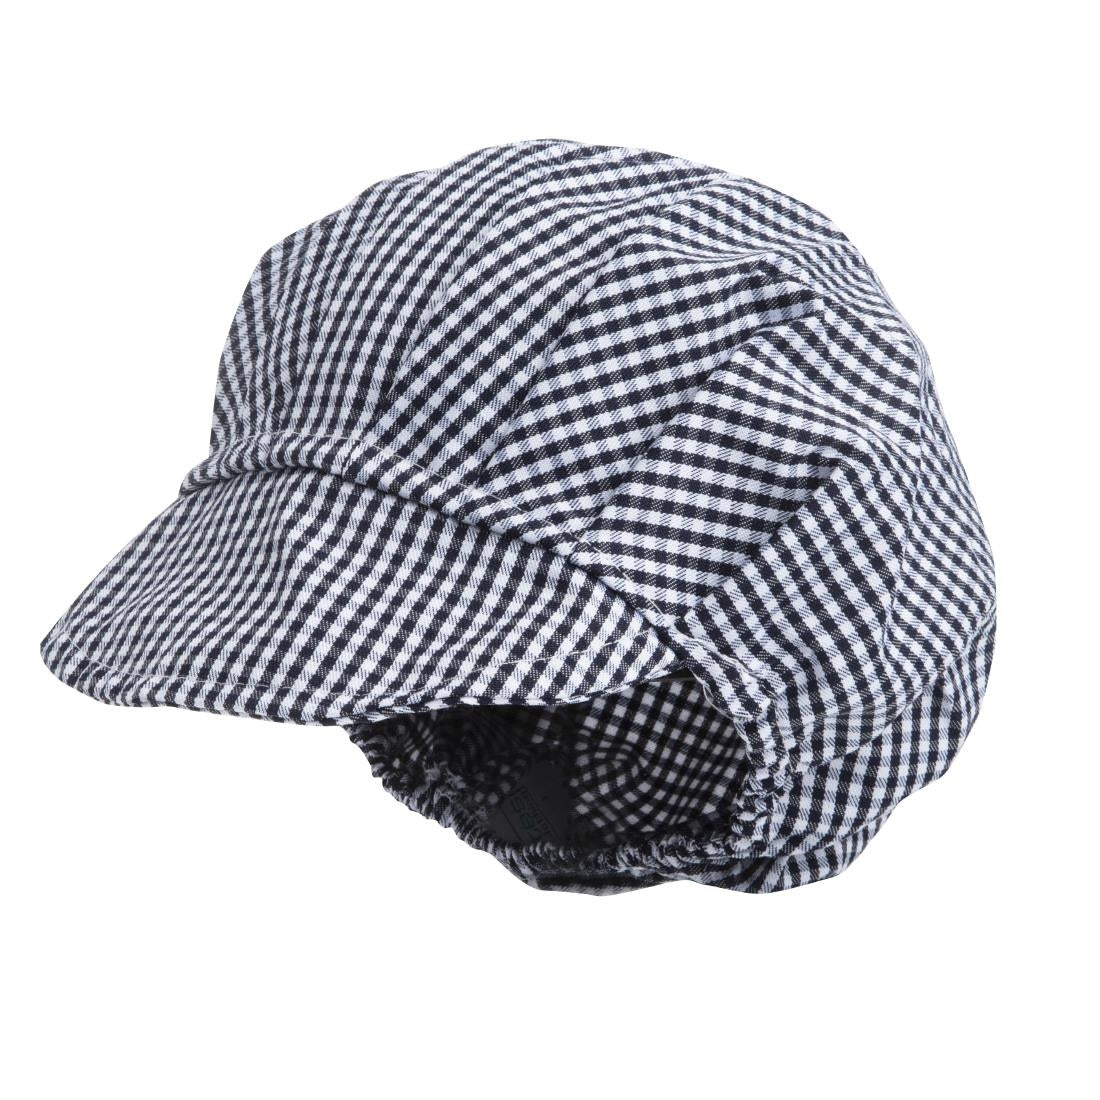 B257 Whites Peaked Unisex Hat